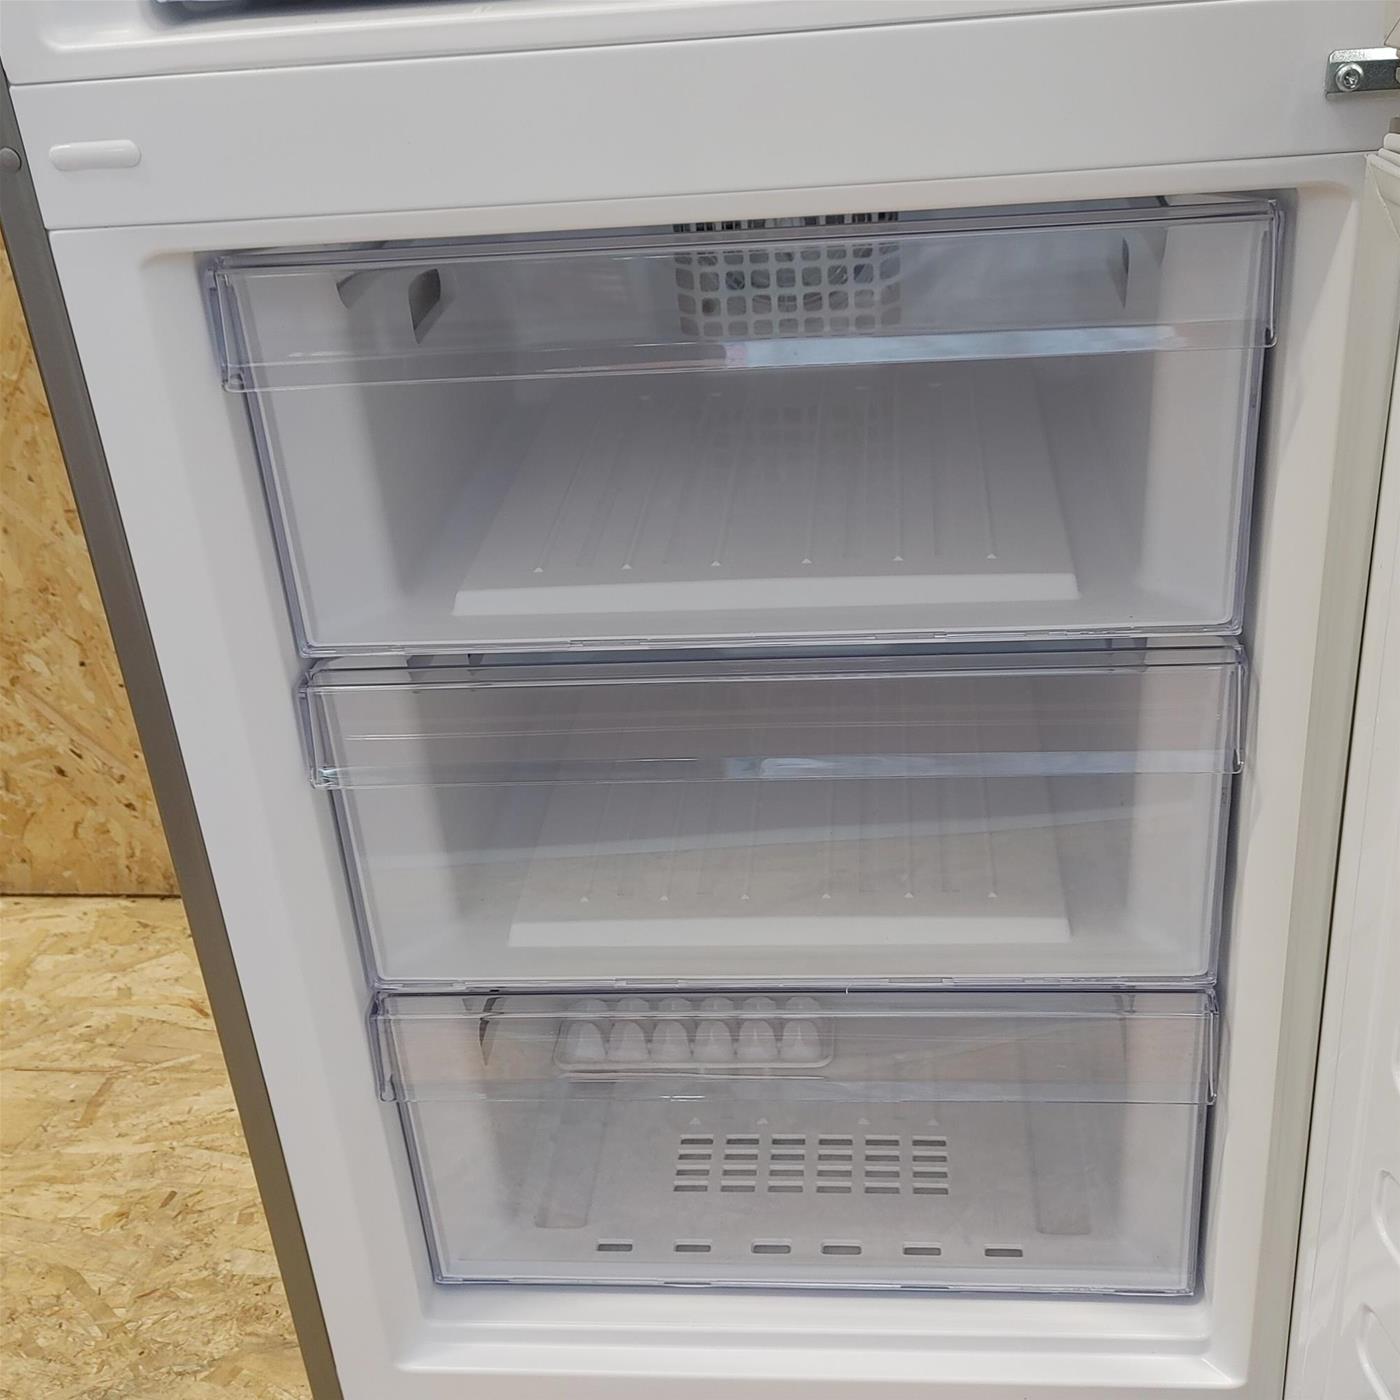 Beko RCNE366E60ZXBN frigorifero con congelatore Libera installazione 324 L D Acciaio inossidabile